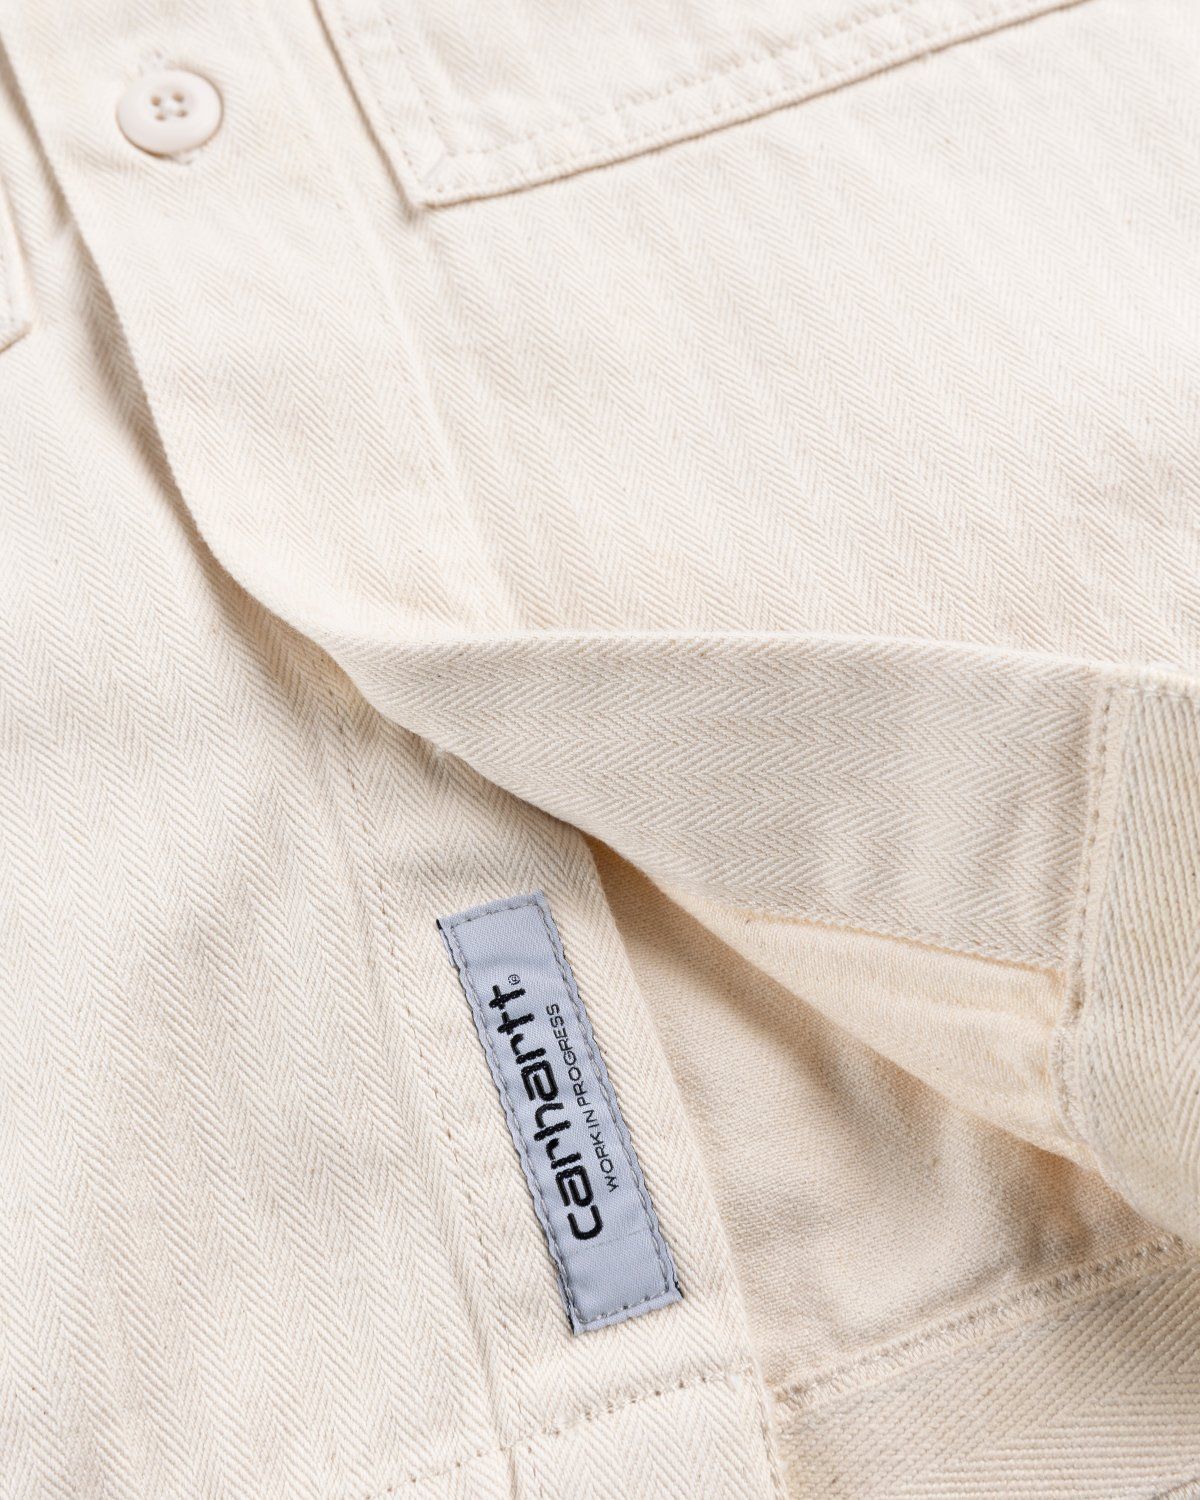 Carhartt WIP – Charter Shirt Natural - Longsleeve Shirts - Beige - Image 6